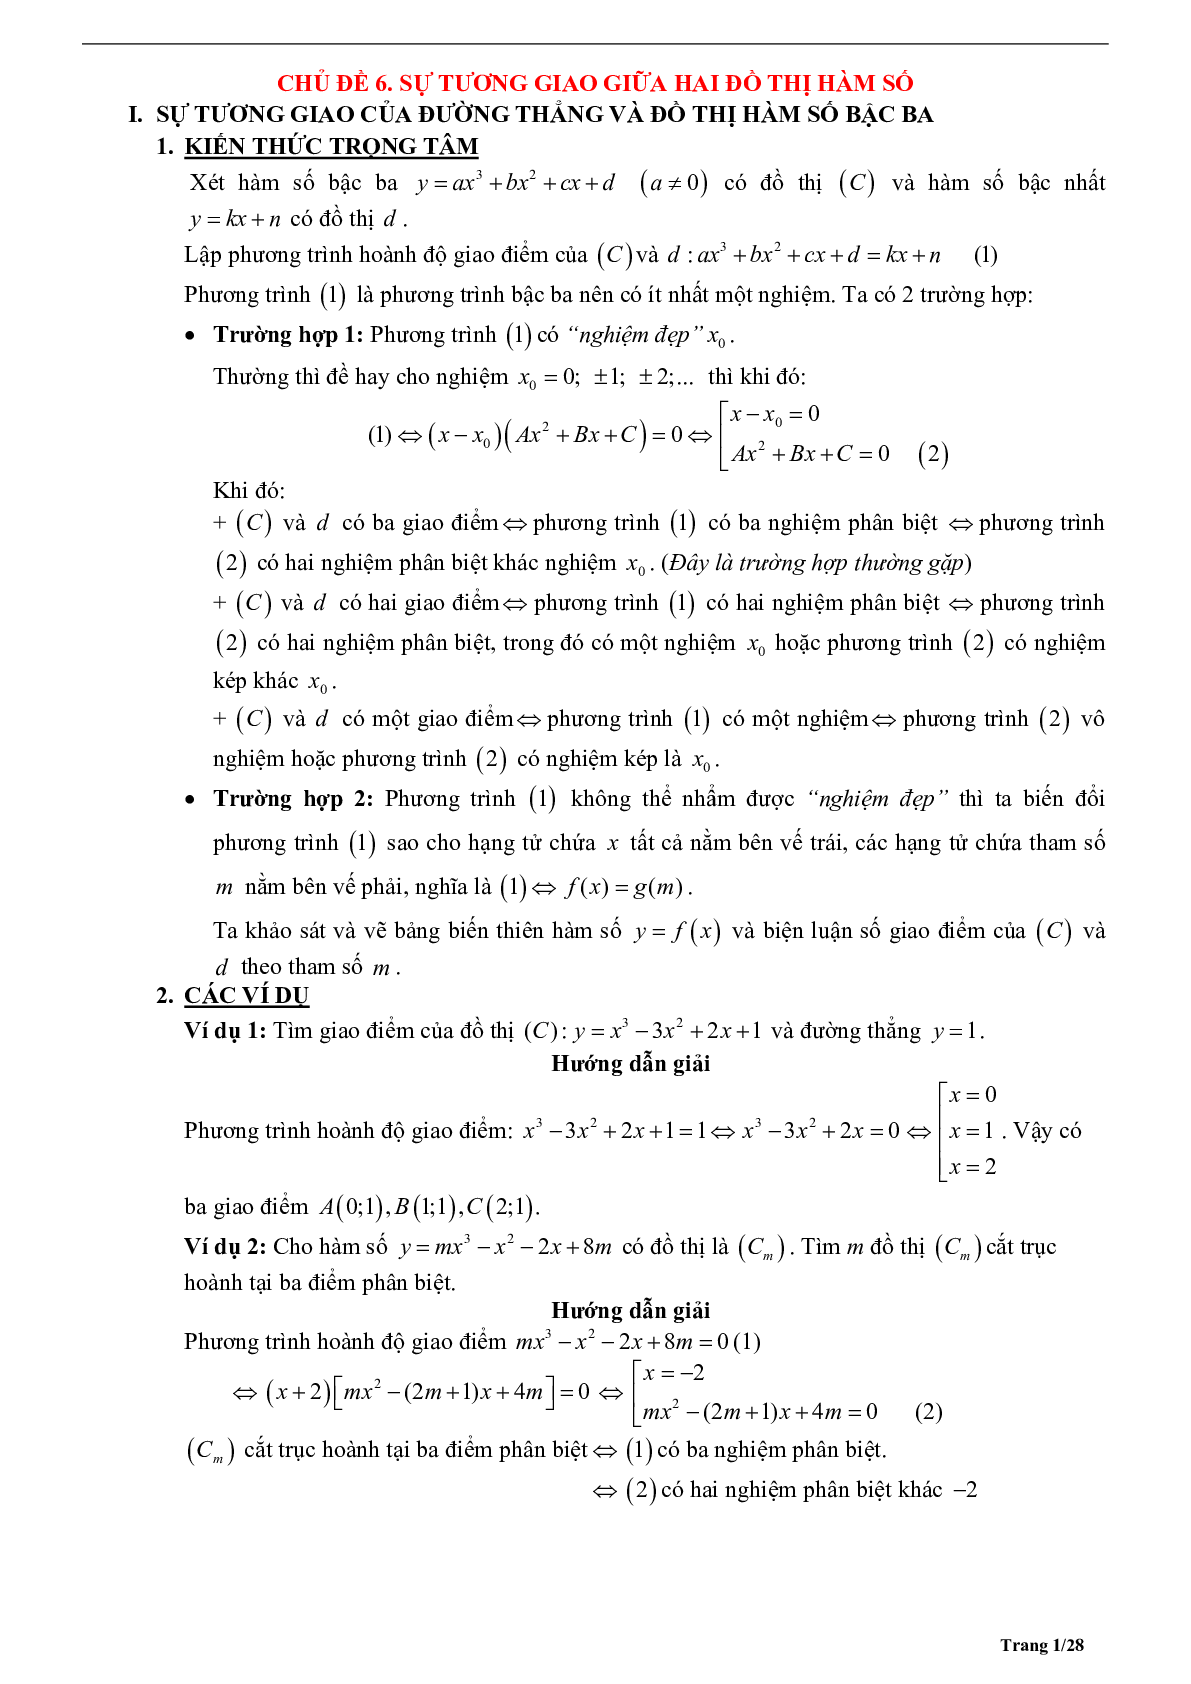 Tóm tắt lý thuyết và bài tập trắc nghiệm về tương giao giữa hai đồ thị hàm số (trang 1)